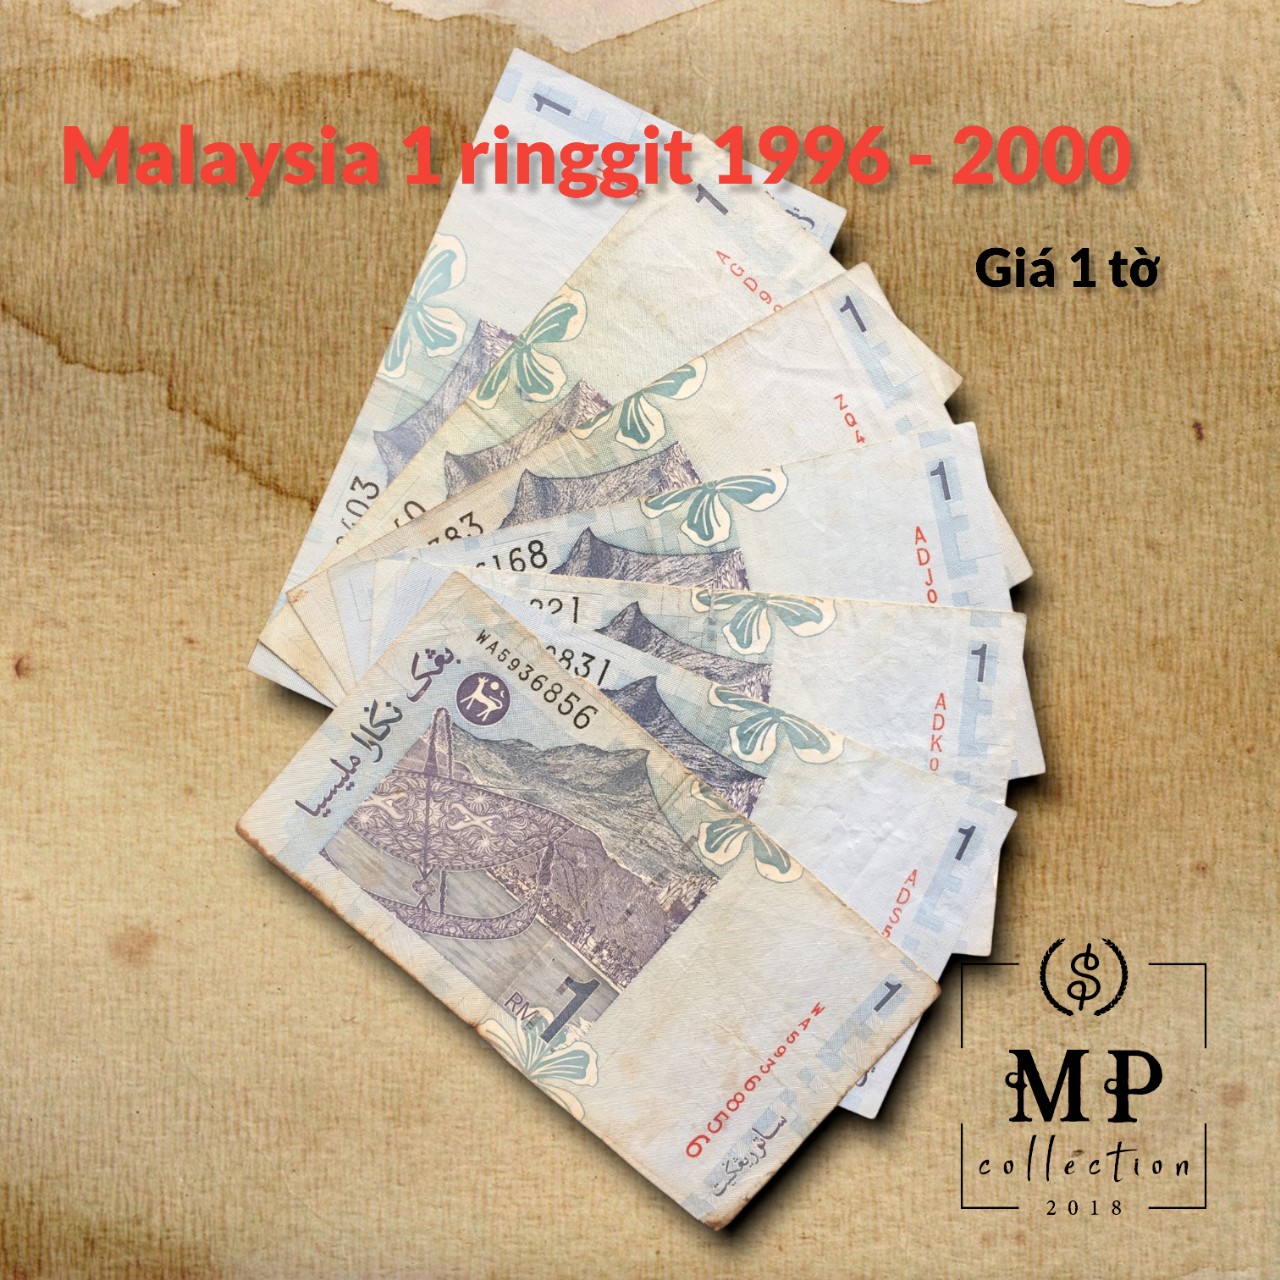 Tiền xưa Malaysia 1 ringgit 1996 2000 chất lượng đã qua sử dụng.